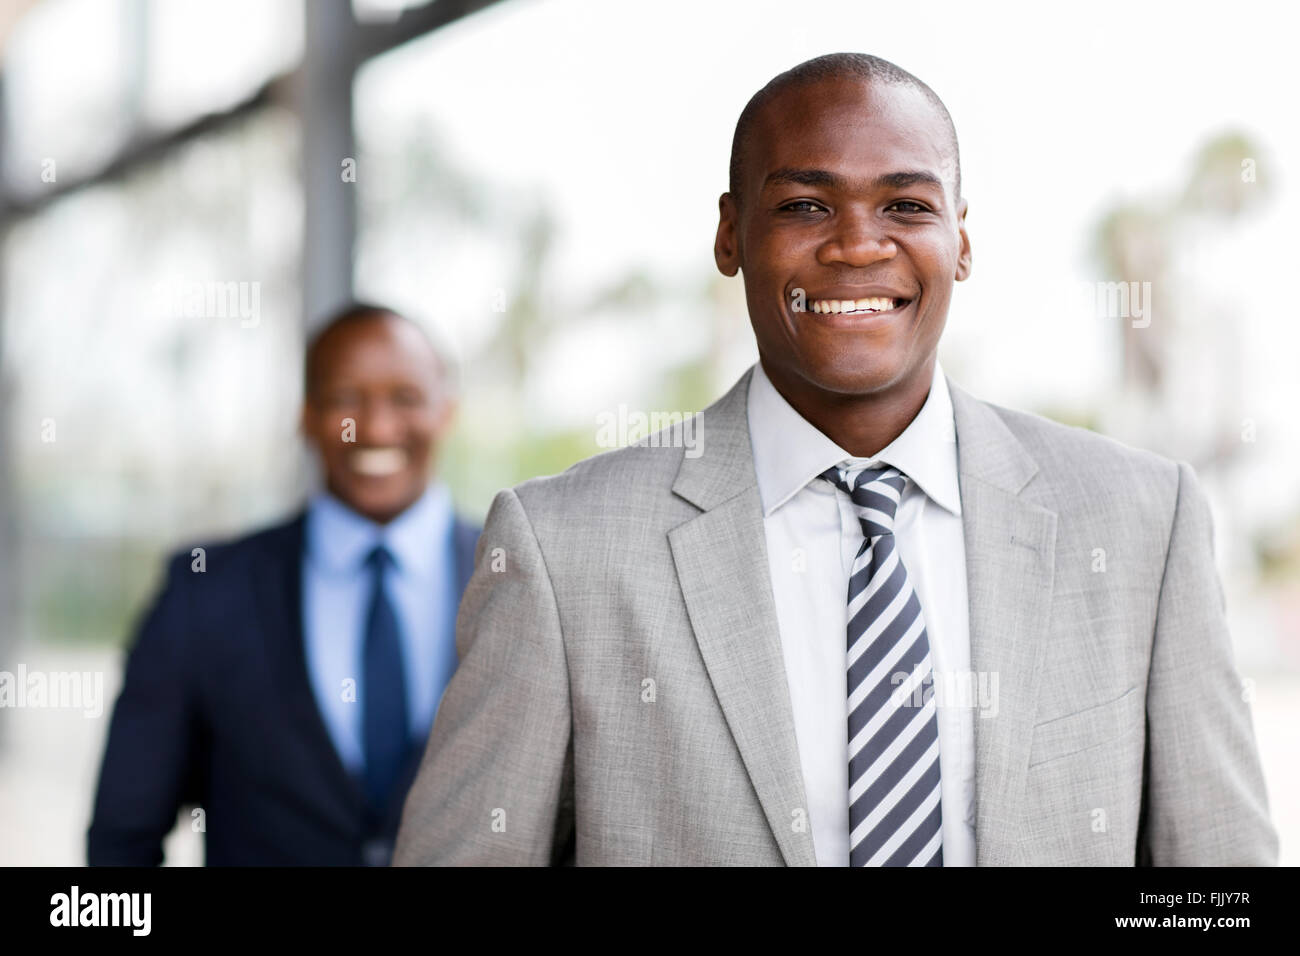 Les jeunes modernes African businessman in office portrait Banque D'Images